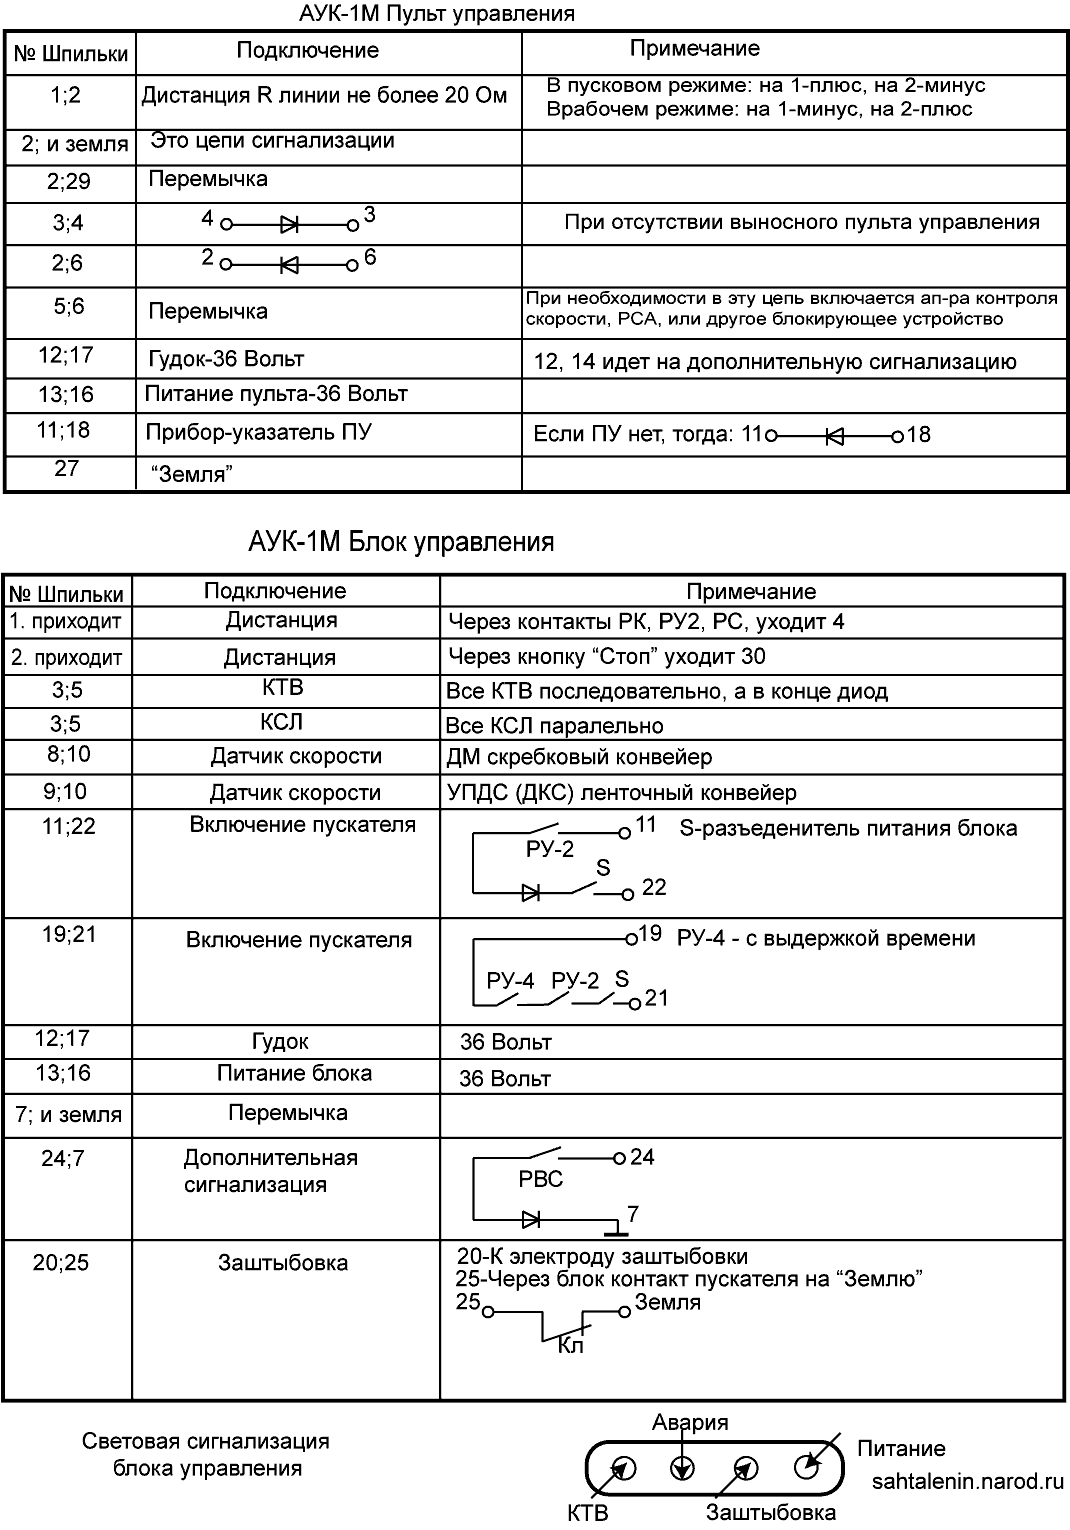 Таблица расключения АУК-1М